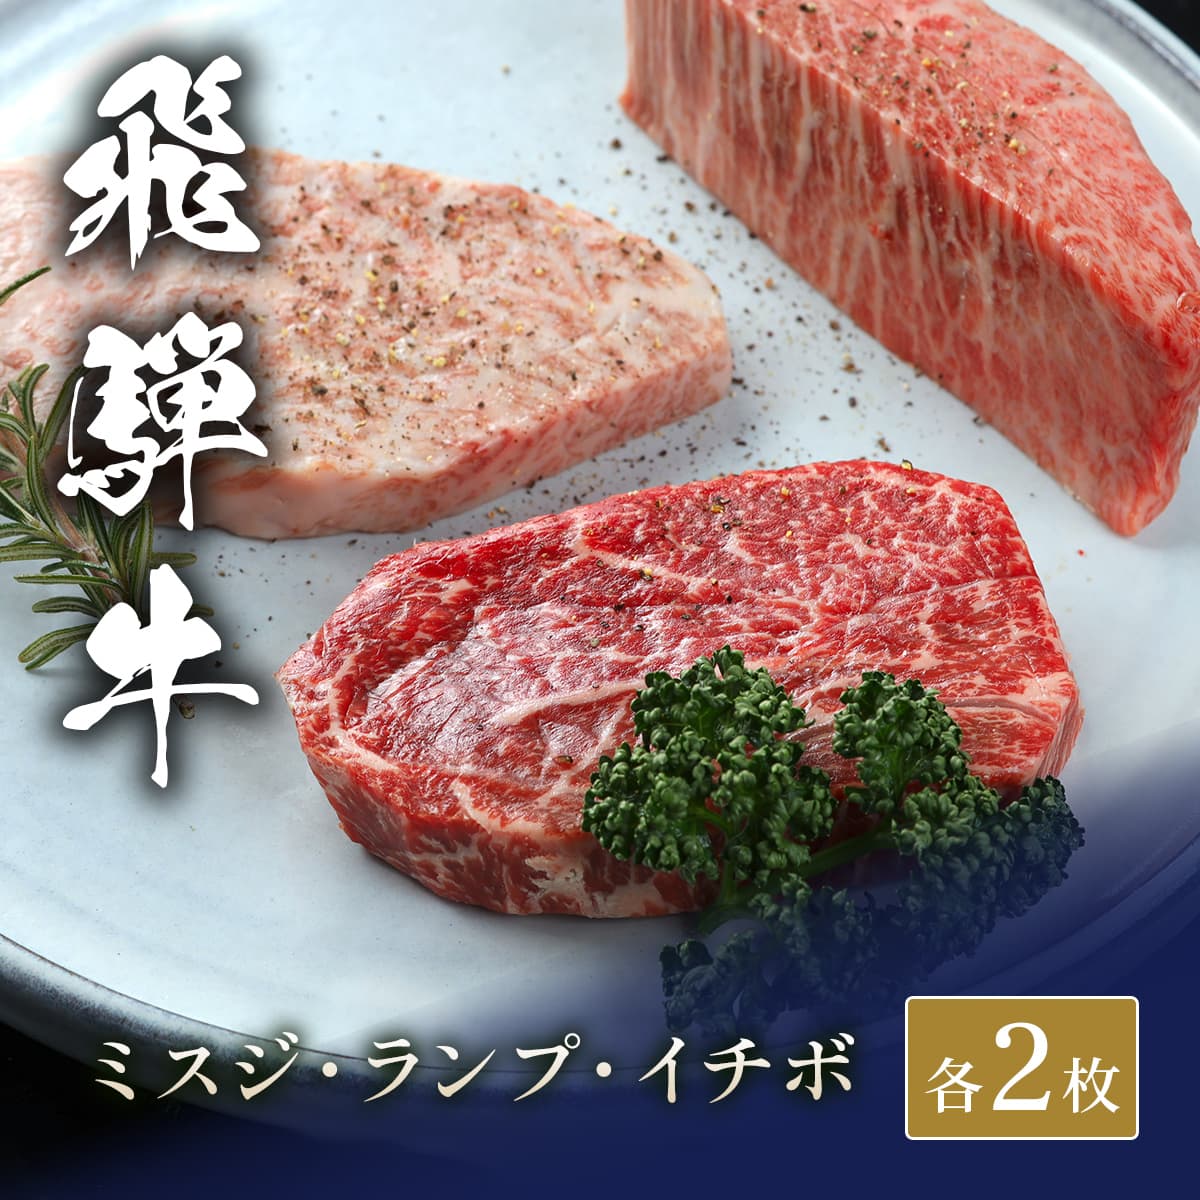 飛騨牛 ステーキ3種食べ比べ イチボ&ランプ&ミスジ x 各2枚